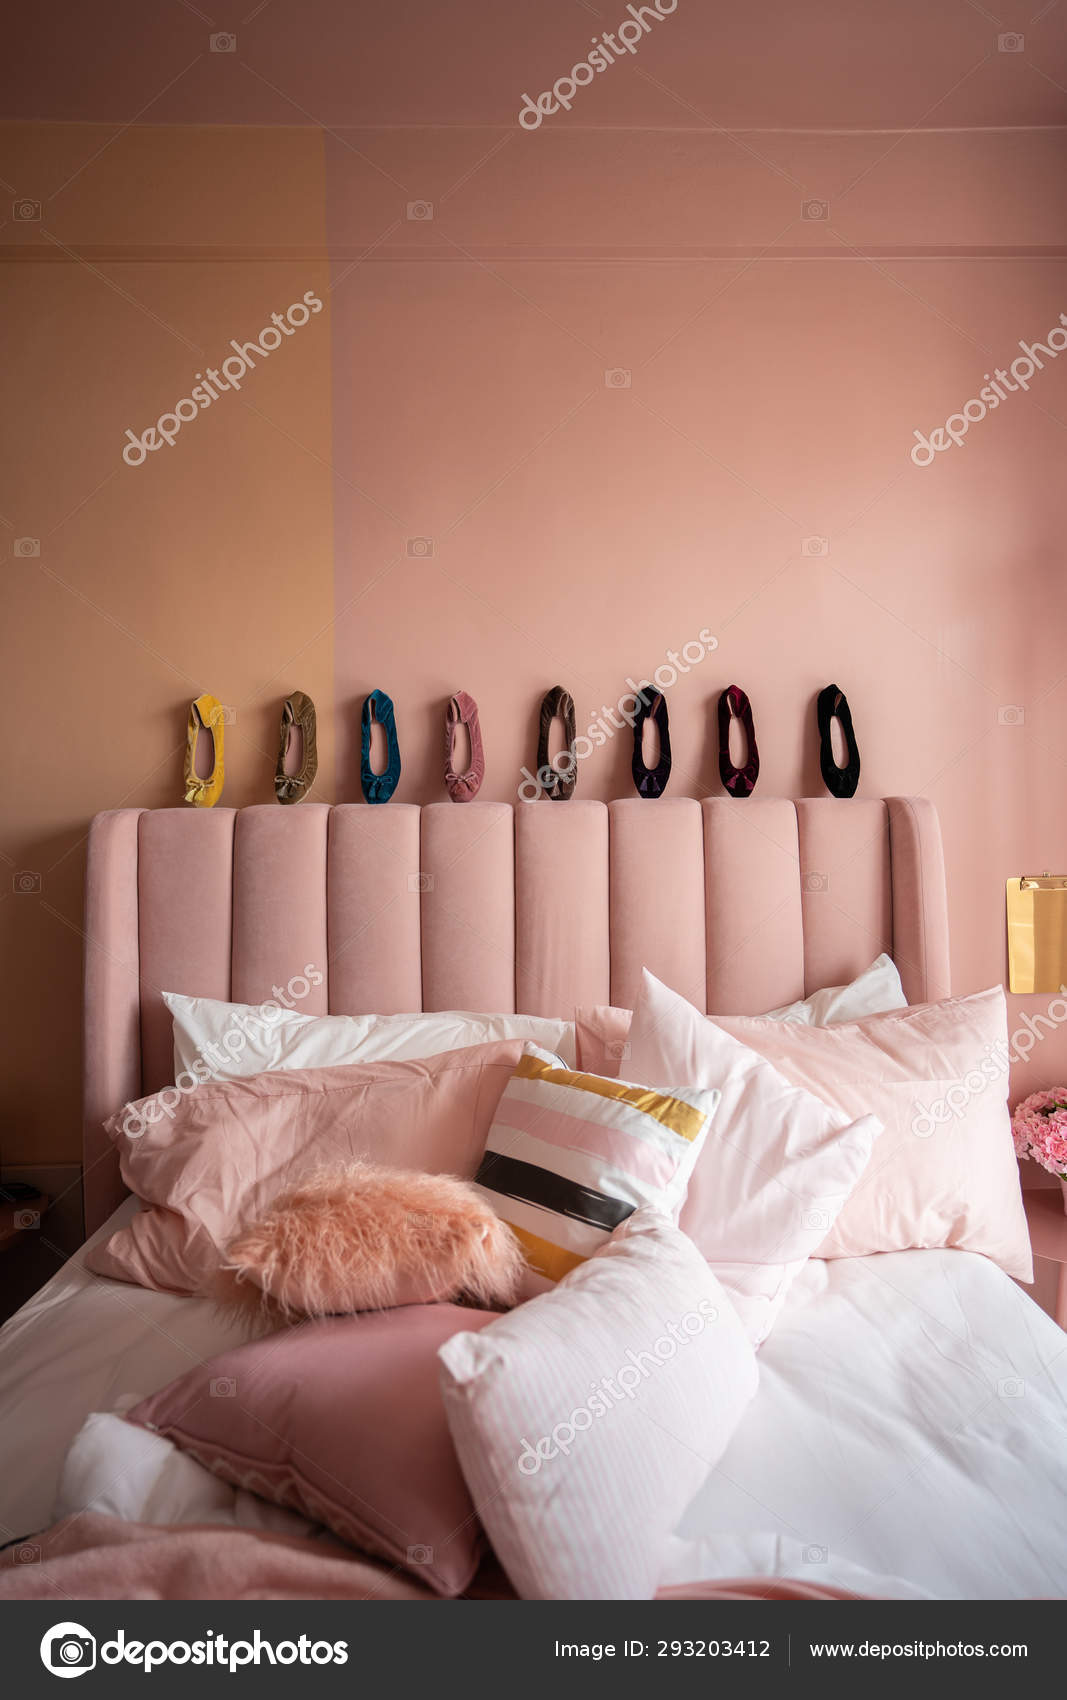 Marxistisch Kalmte doneren Licht Roze Slaapkamer Interieur Met Kleurrijke Schoenen Hoofdsteun Voor Bed  ⬇ Stockfoto, rechtenvrije foto door © nmc2s #293203412